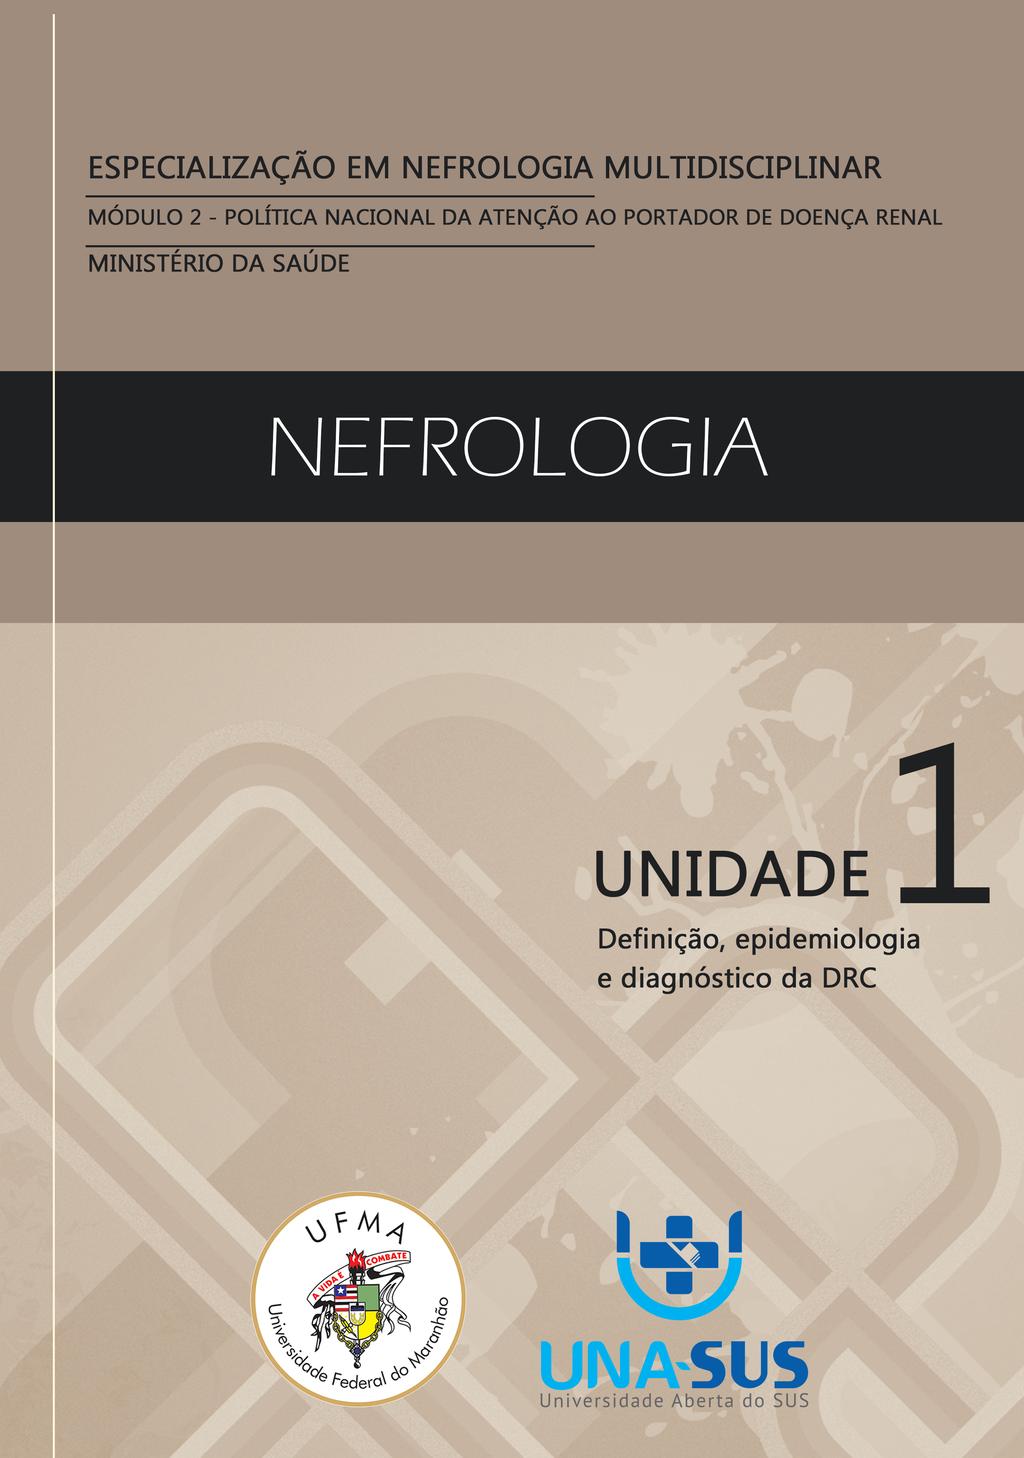 Especialização em Nefrologia Multidisciplinar CURSO AUTOINSTRUCIONAL DE NEFROLOGIA